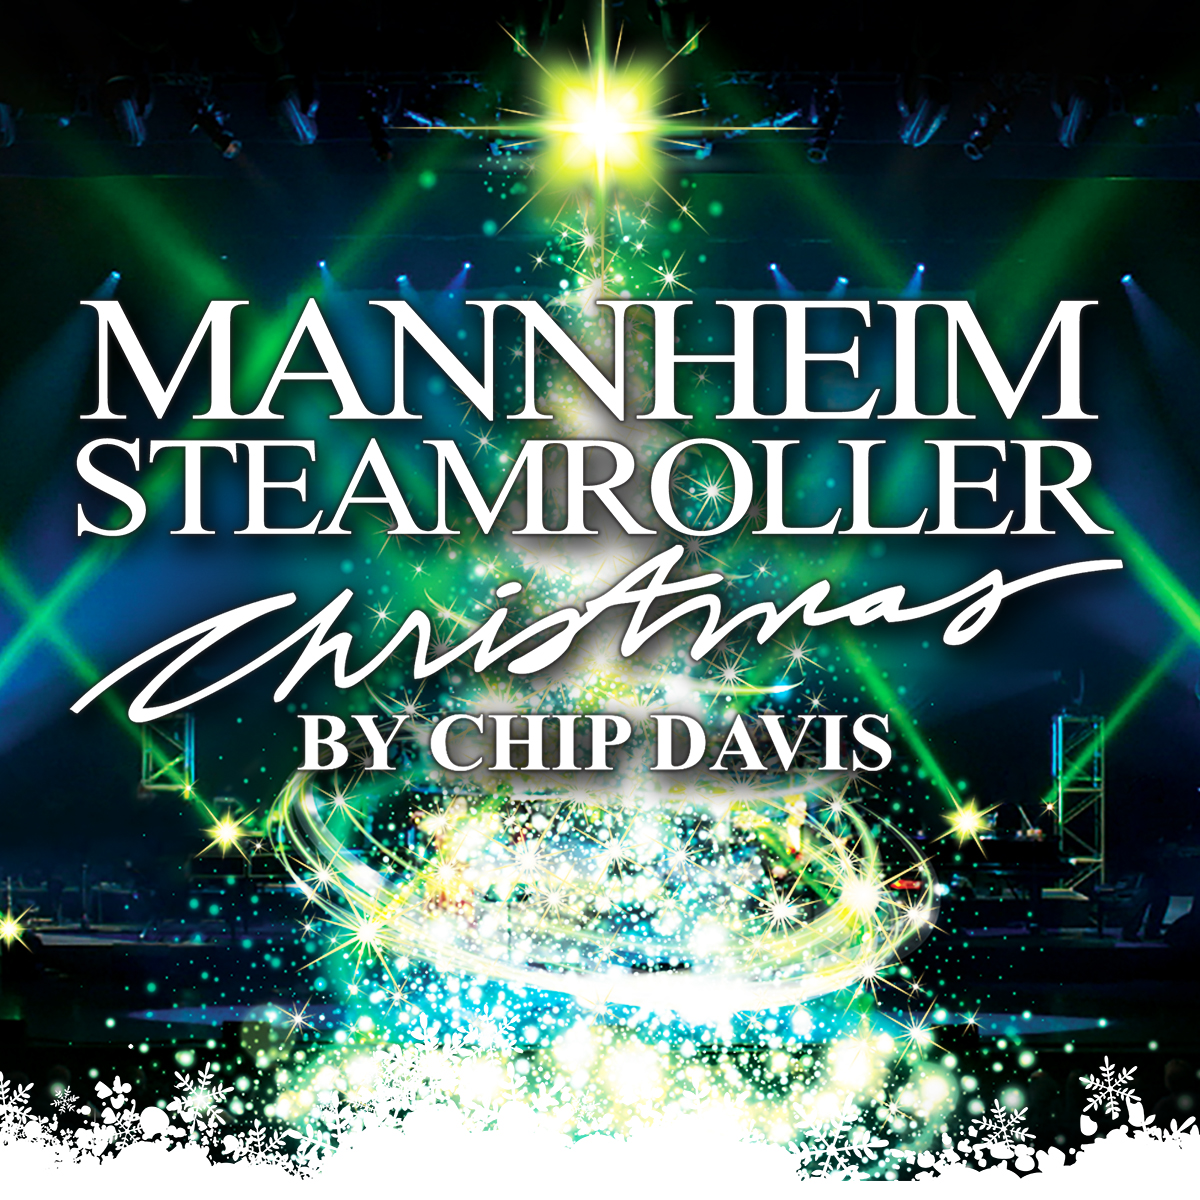 MANNHEIM STEAMROLLER ANNOUNCES 2019 CHRISTMAS TOUR – Mannheim Steamroller